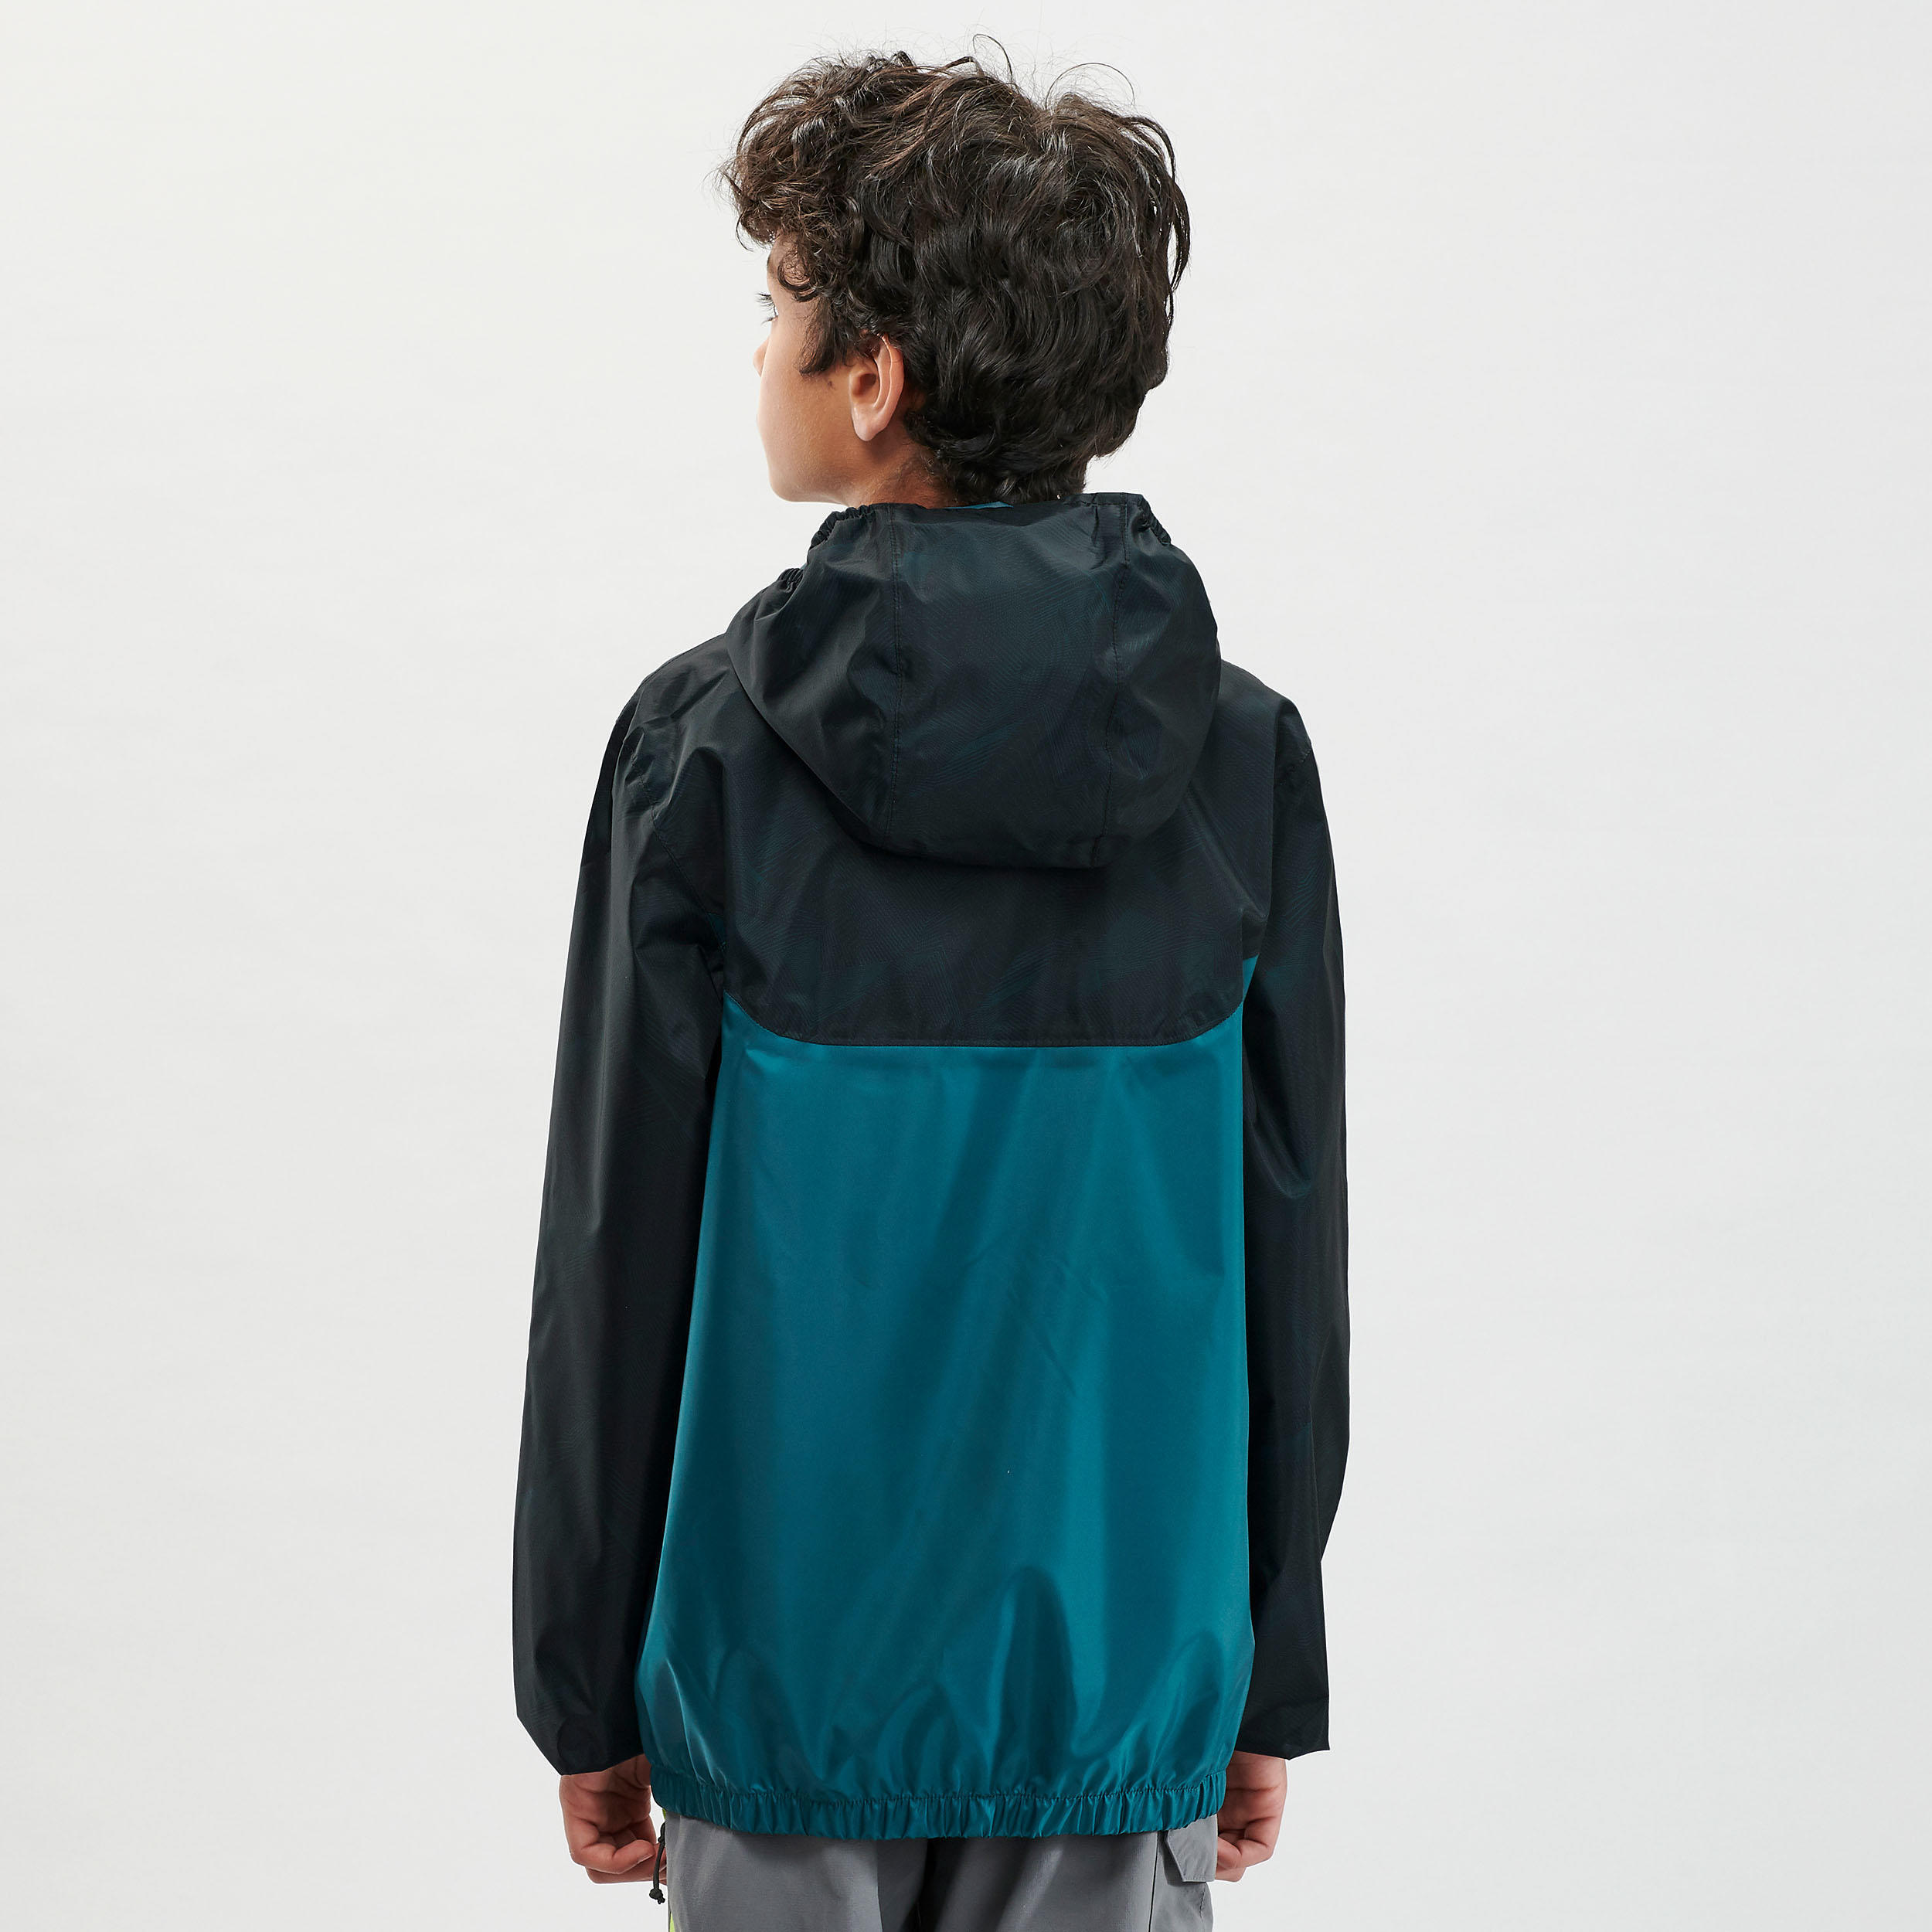 Kids’ Hiking Waterproof Jacket MH150  7-15 Years - green  5/7